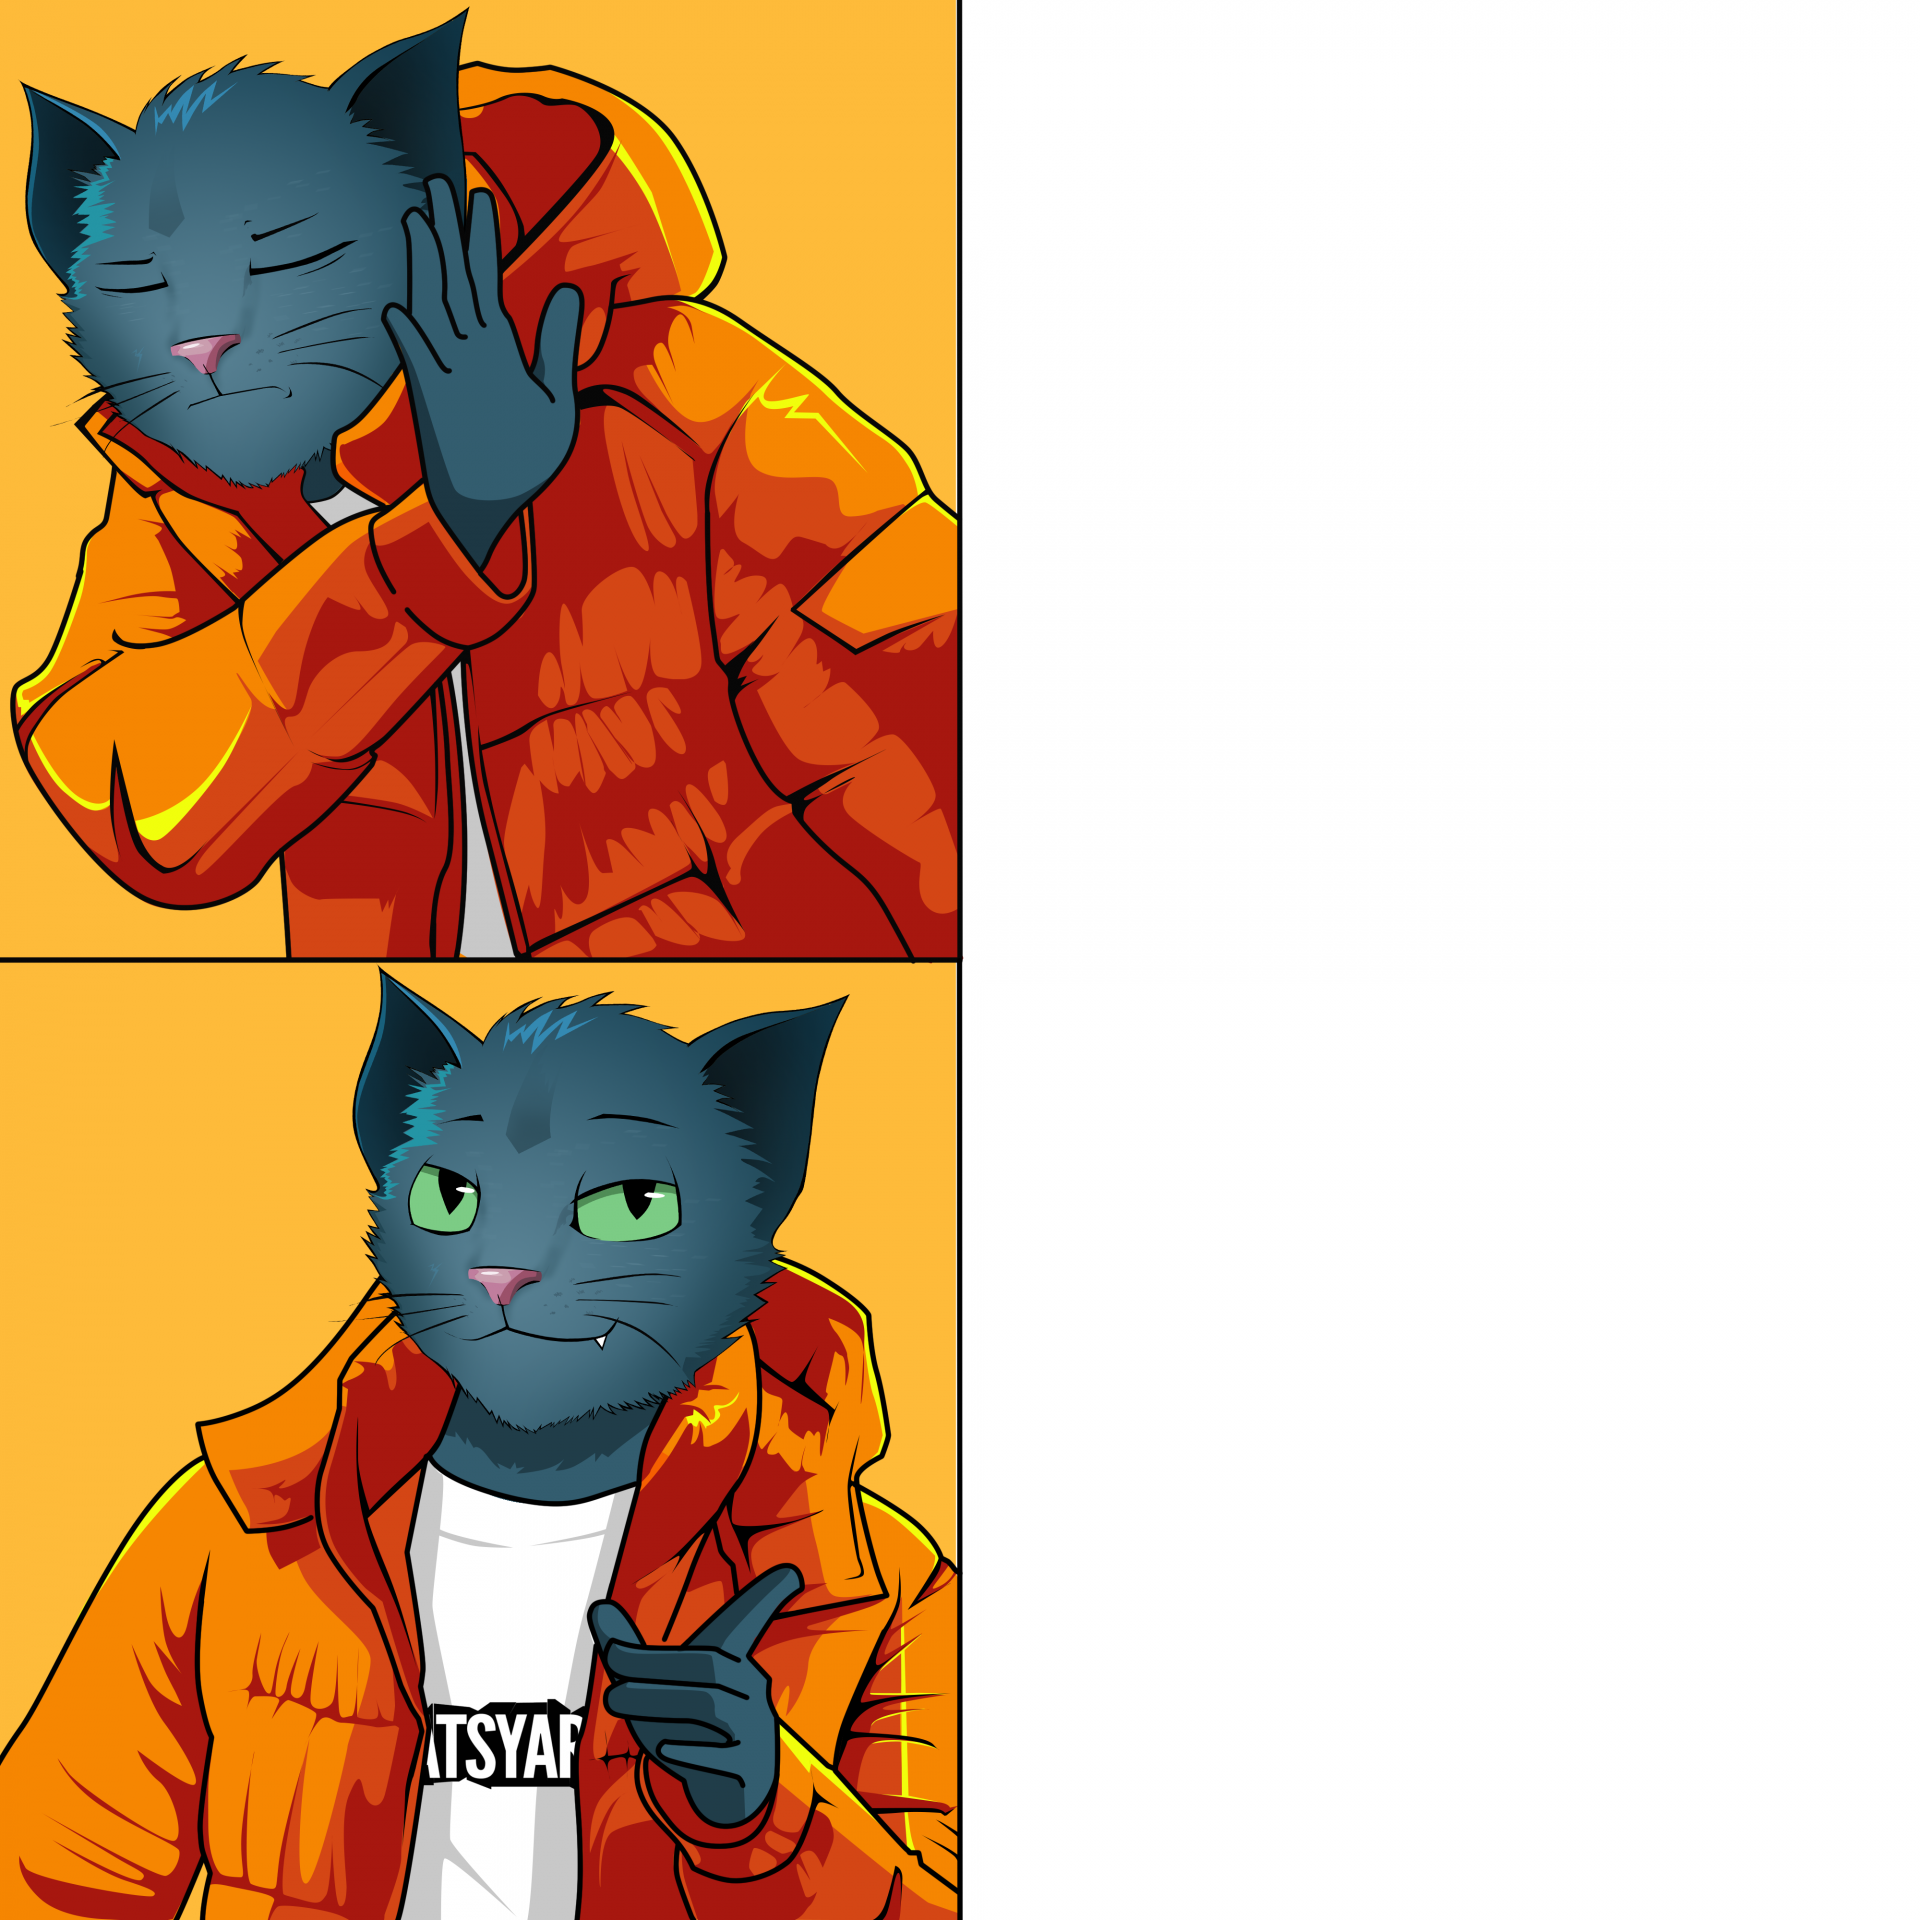 High Quality Drake Hotline Bling Meme (Catsyard Edition) Blank Meme Template